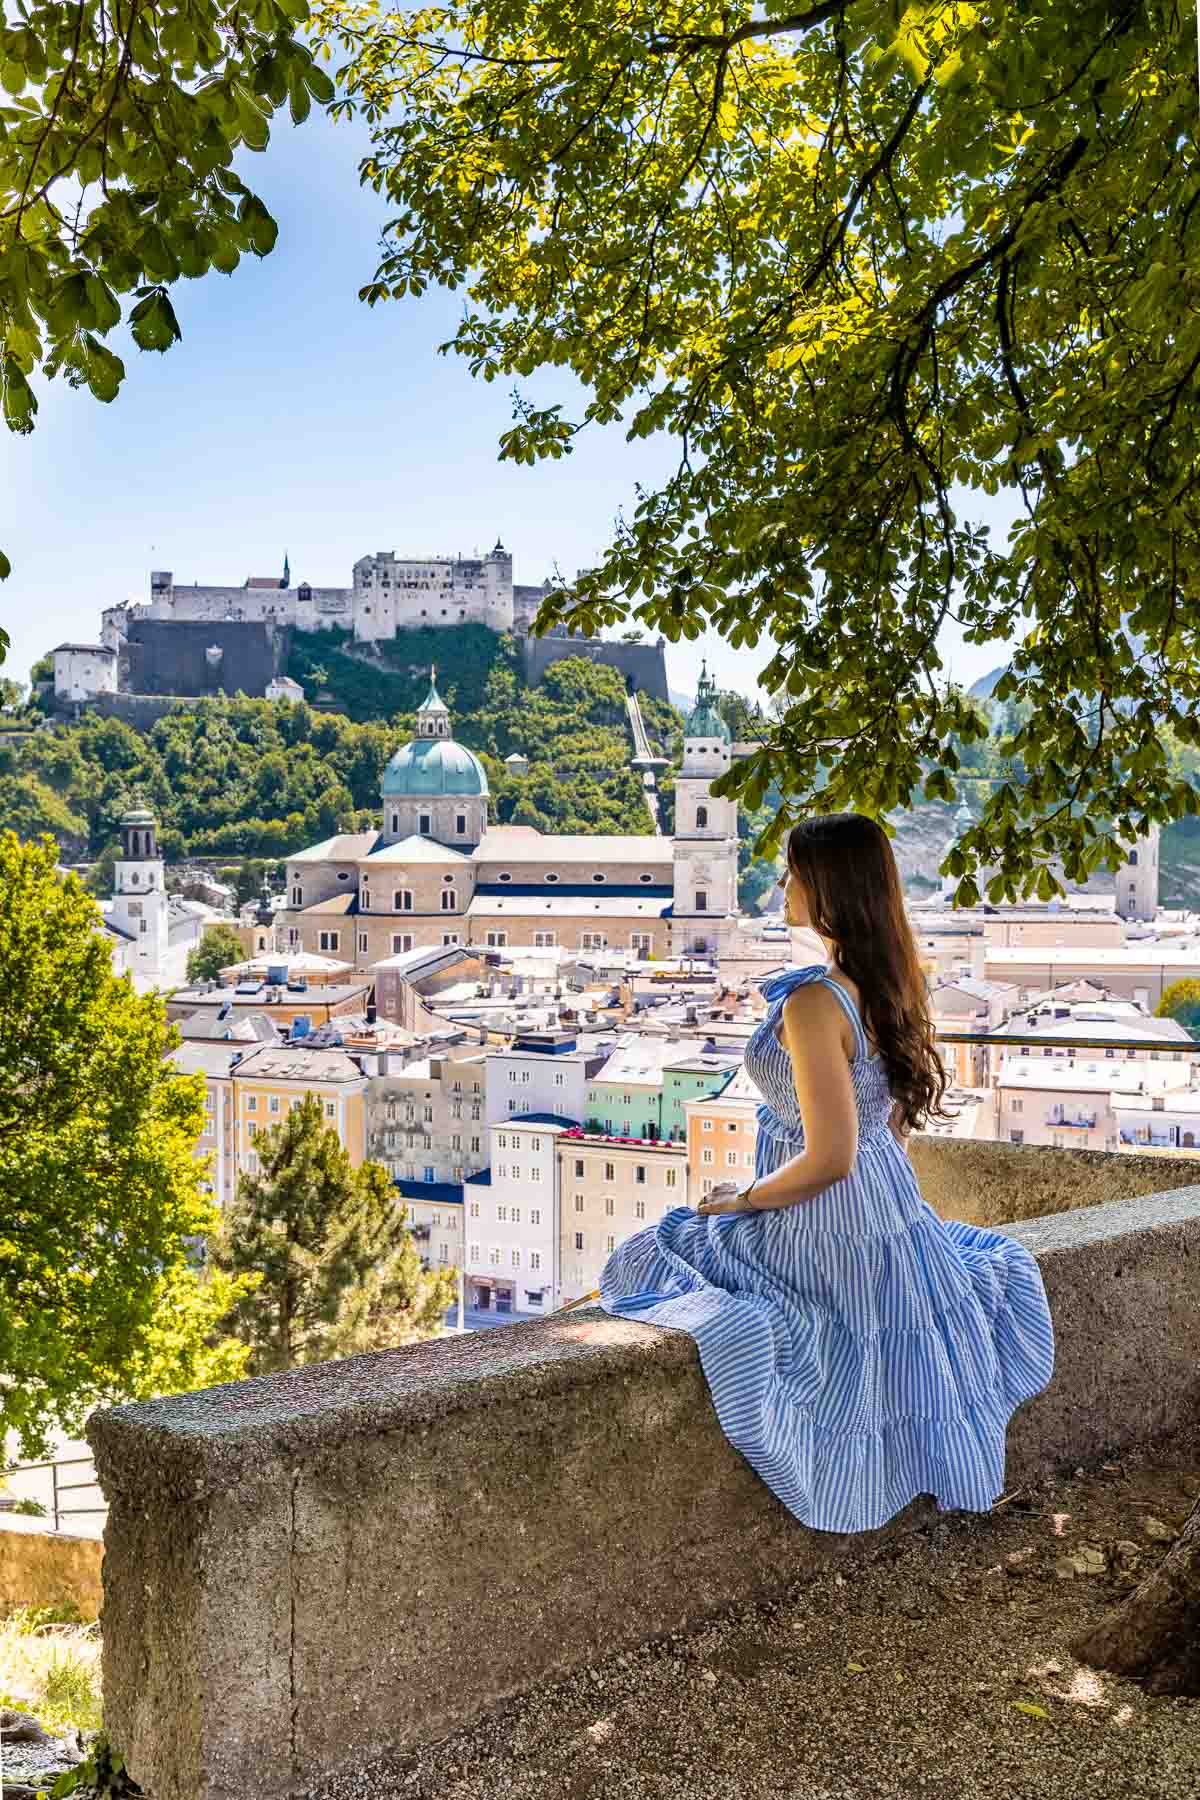 panorámás kilátás Salzburgra a Kapuzinerkloster nézőpontból, kék ruhás lánnyal